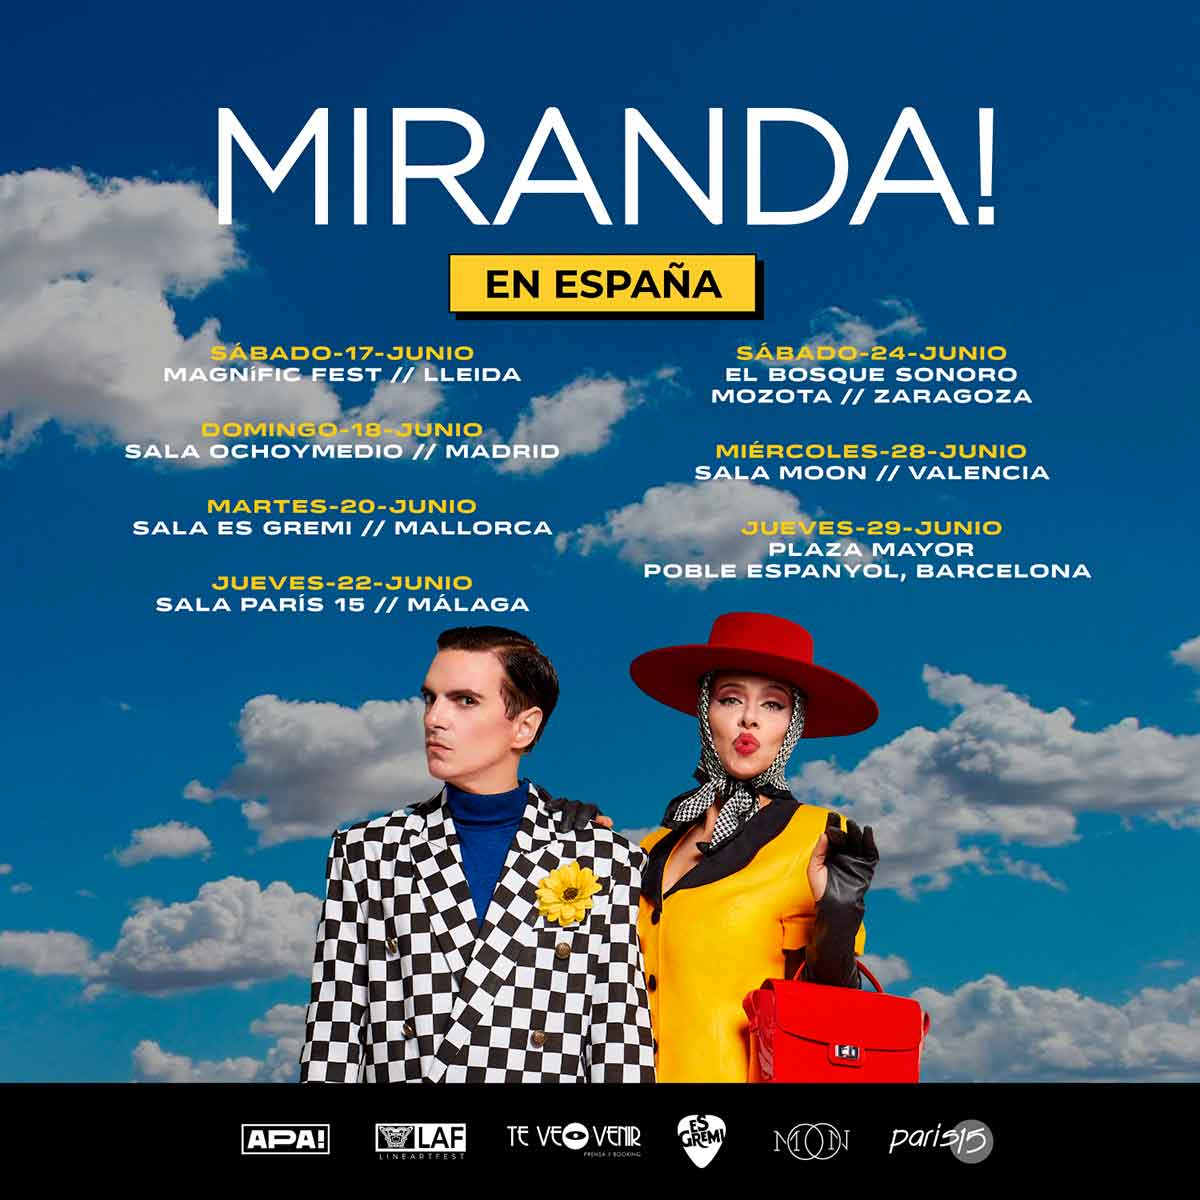 Miranda! en España